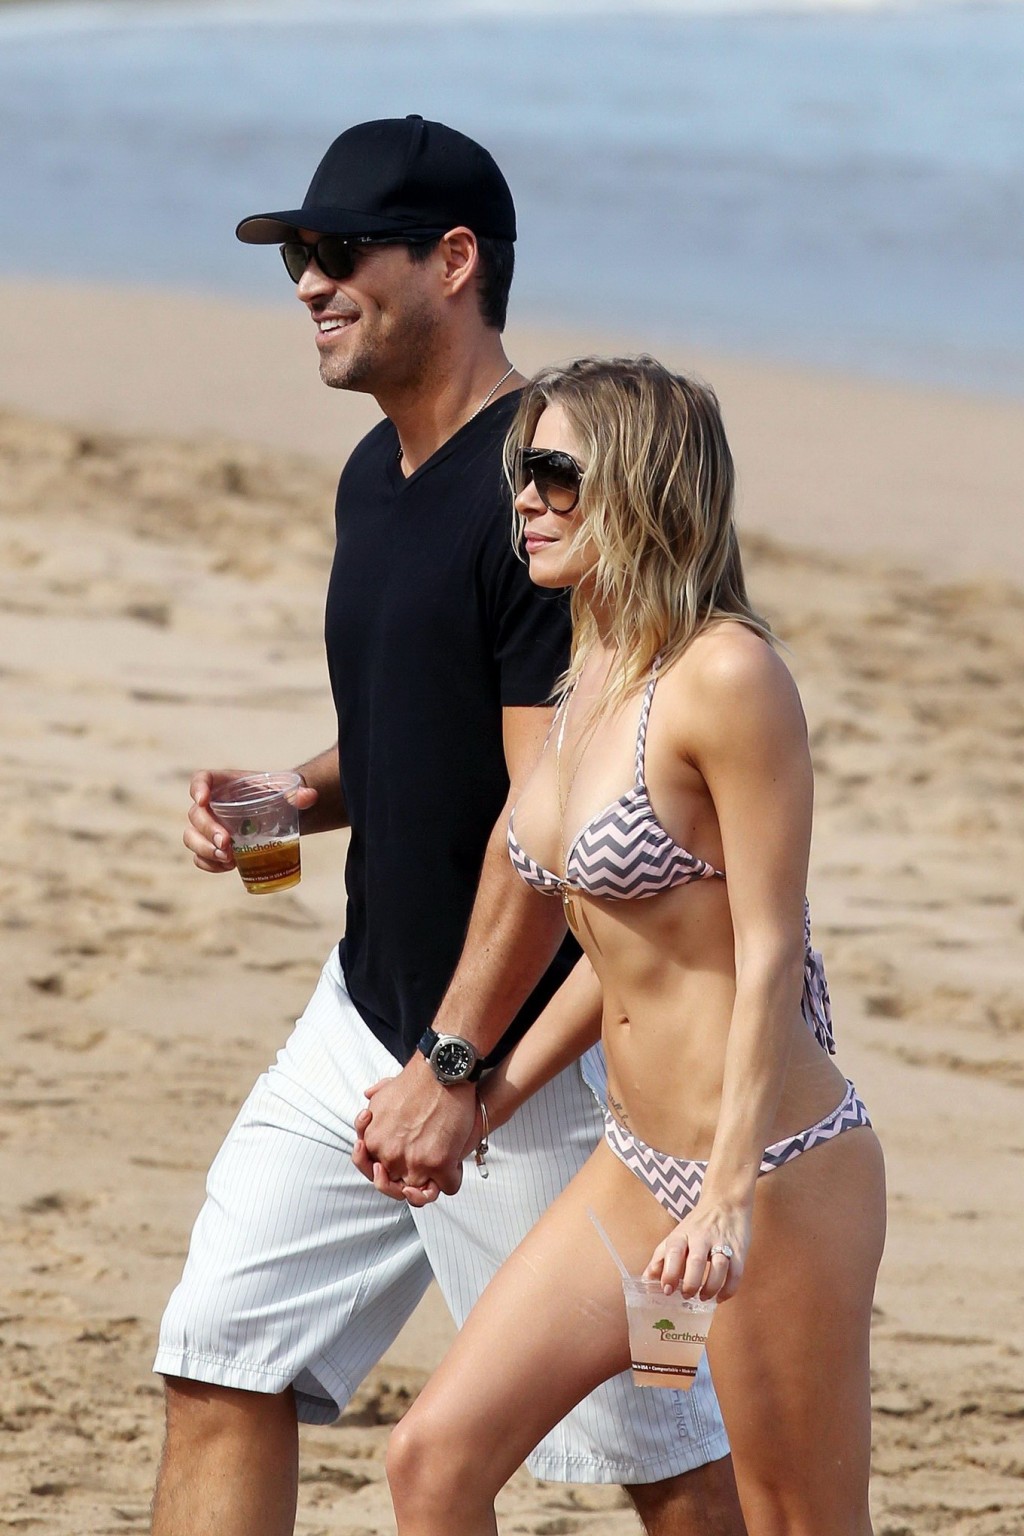 Leann rimes en bikini acariciando con su marido en una playa de hawaii
 #75276902